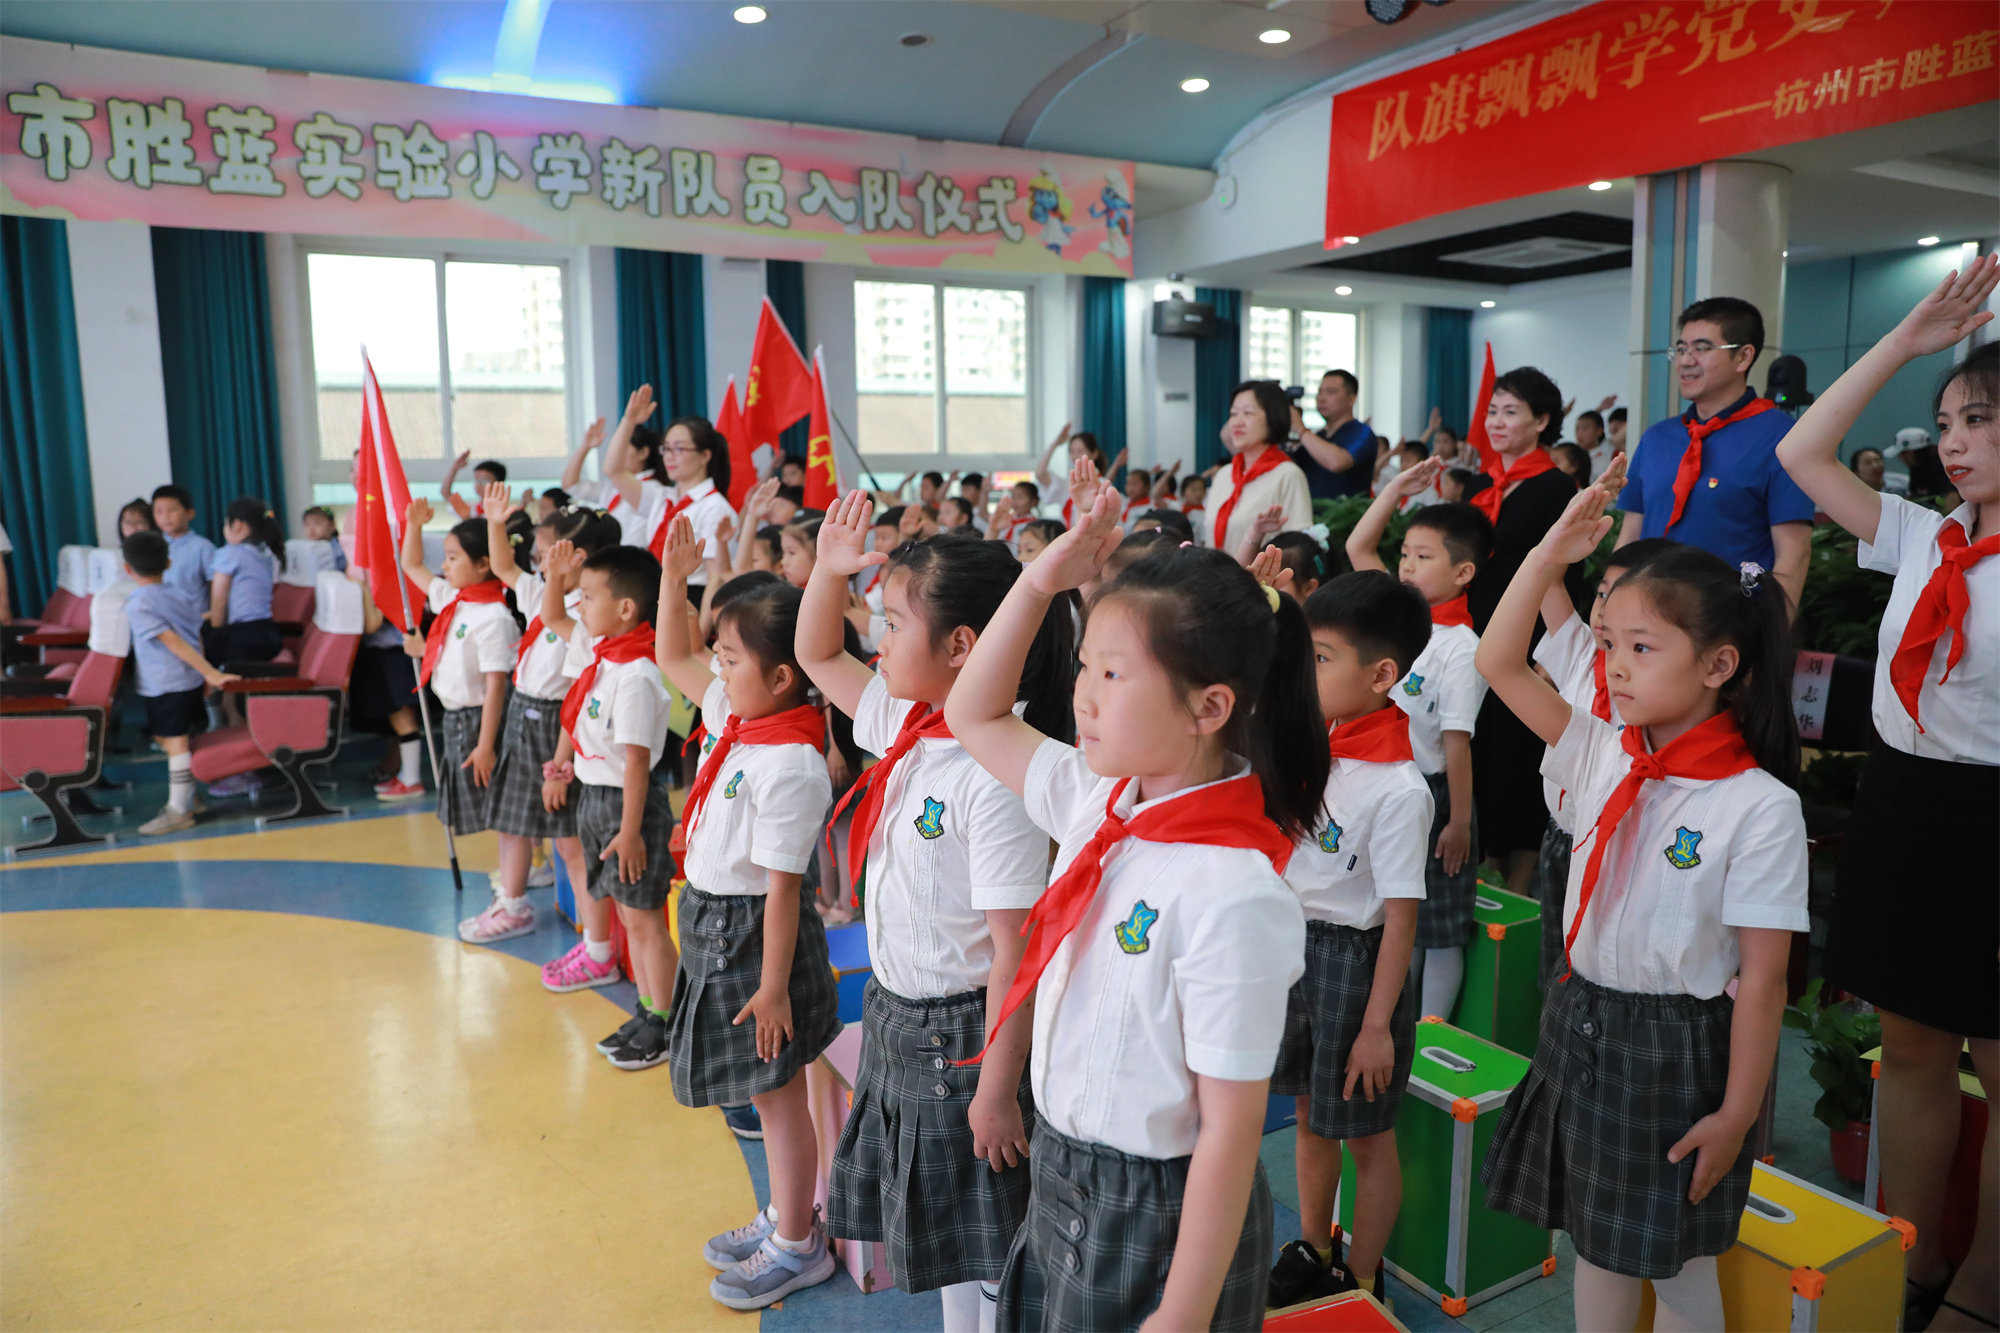 今天我入队啦！杭州市胜蓝实验小学举行主题队日活动